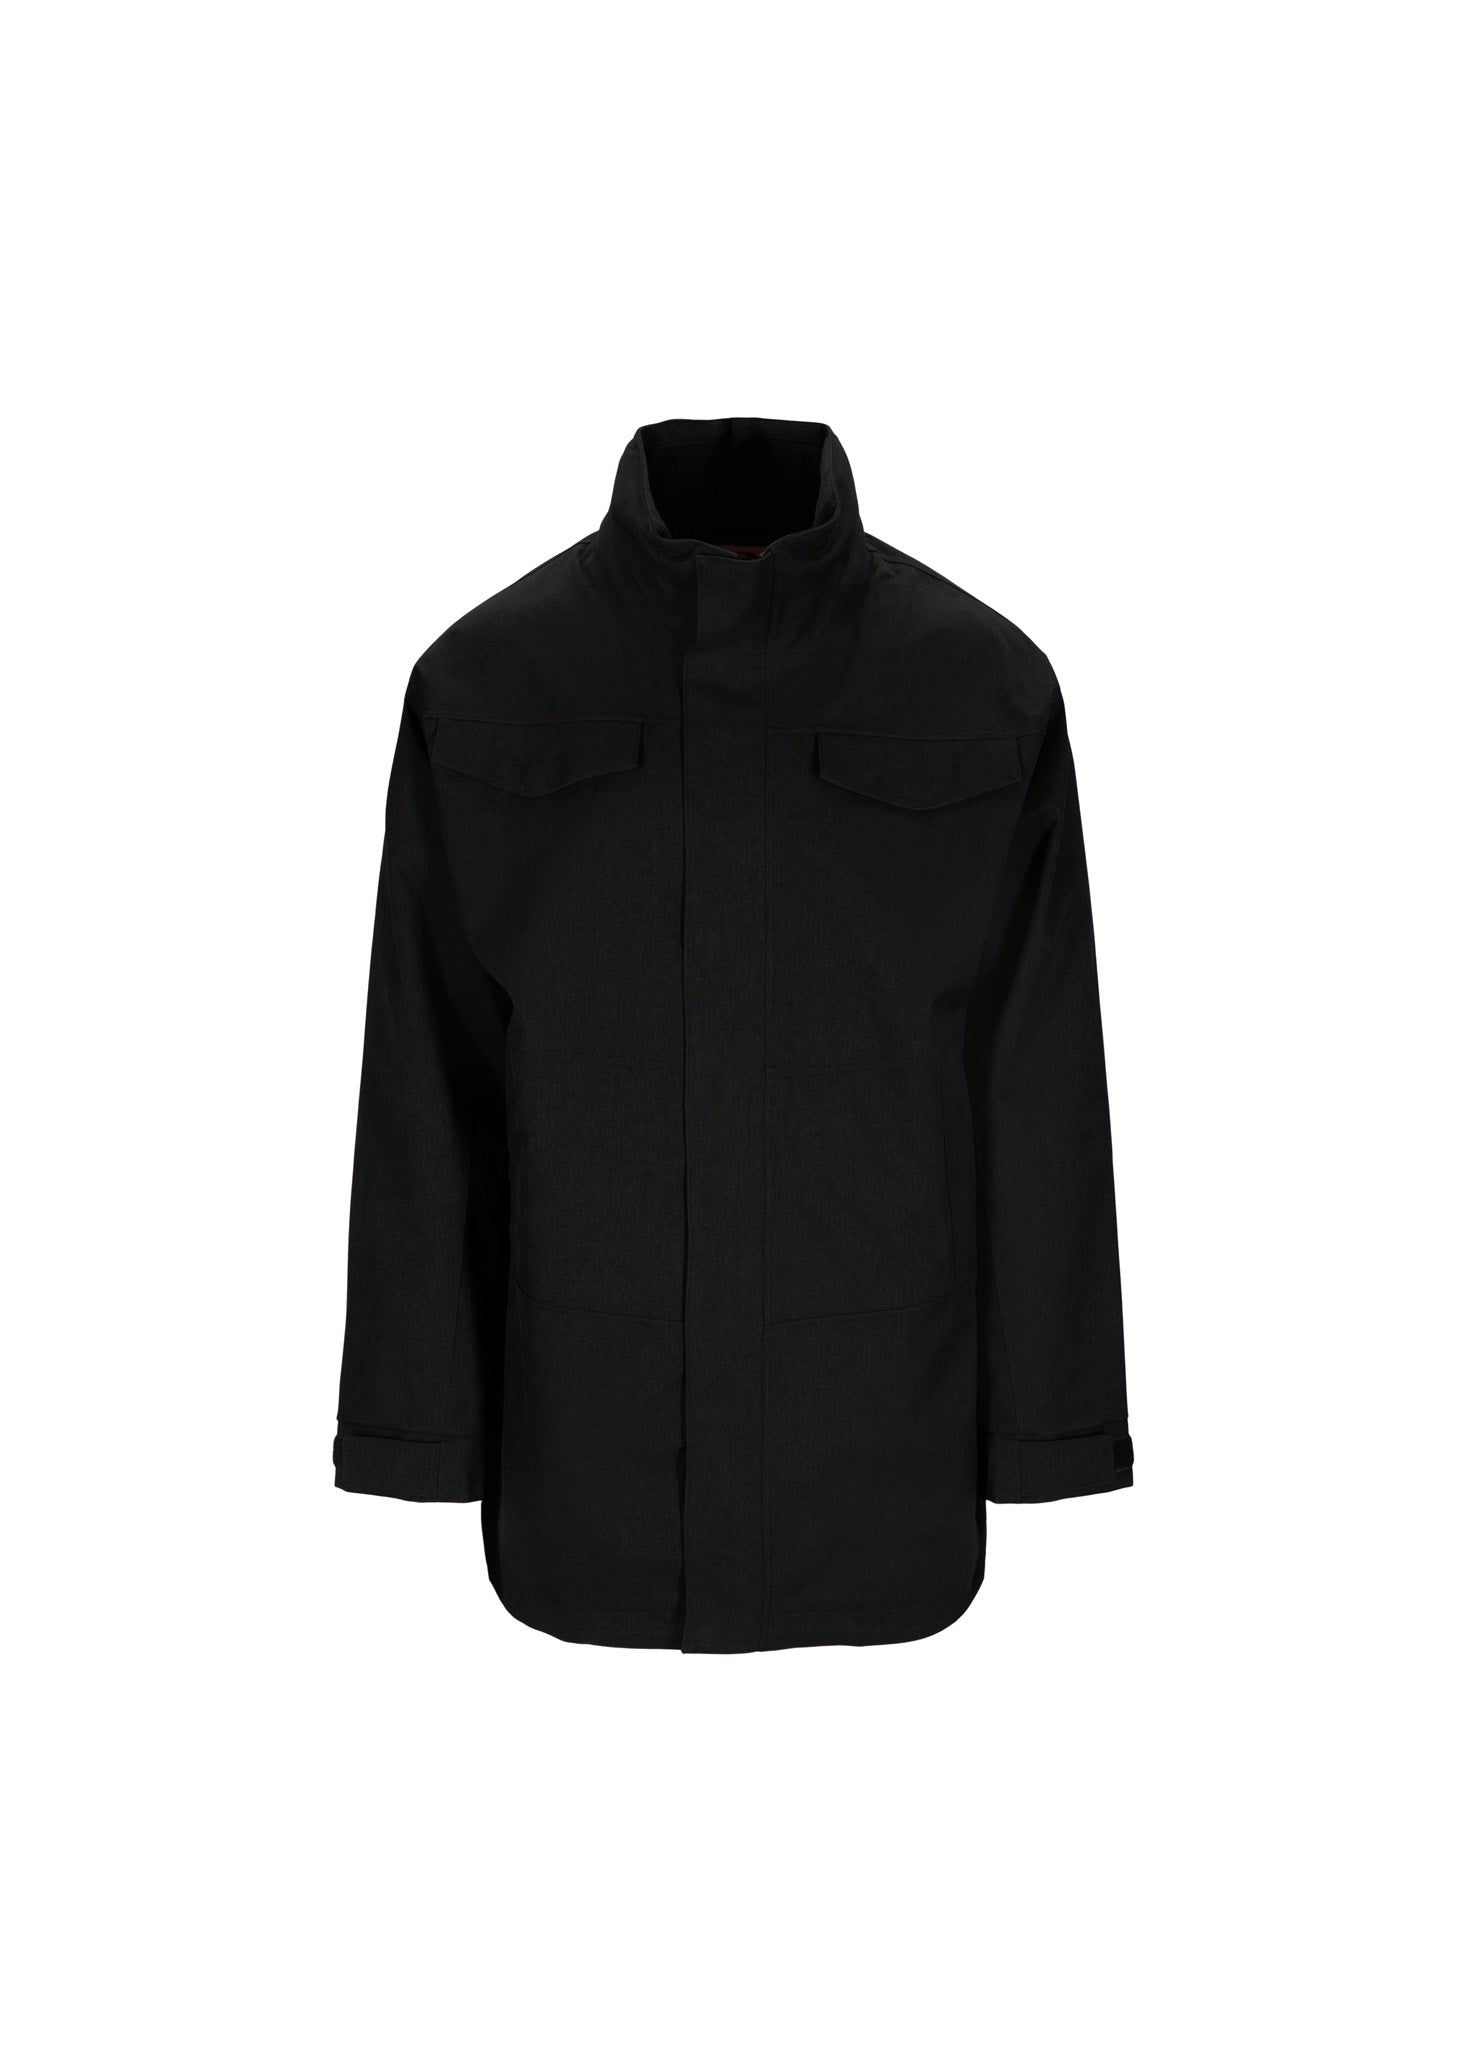 BRGN Nordavind Mens Jacket Coats 095 New Black